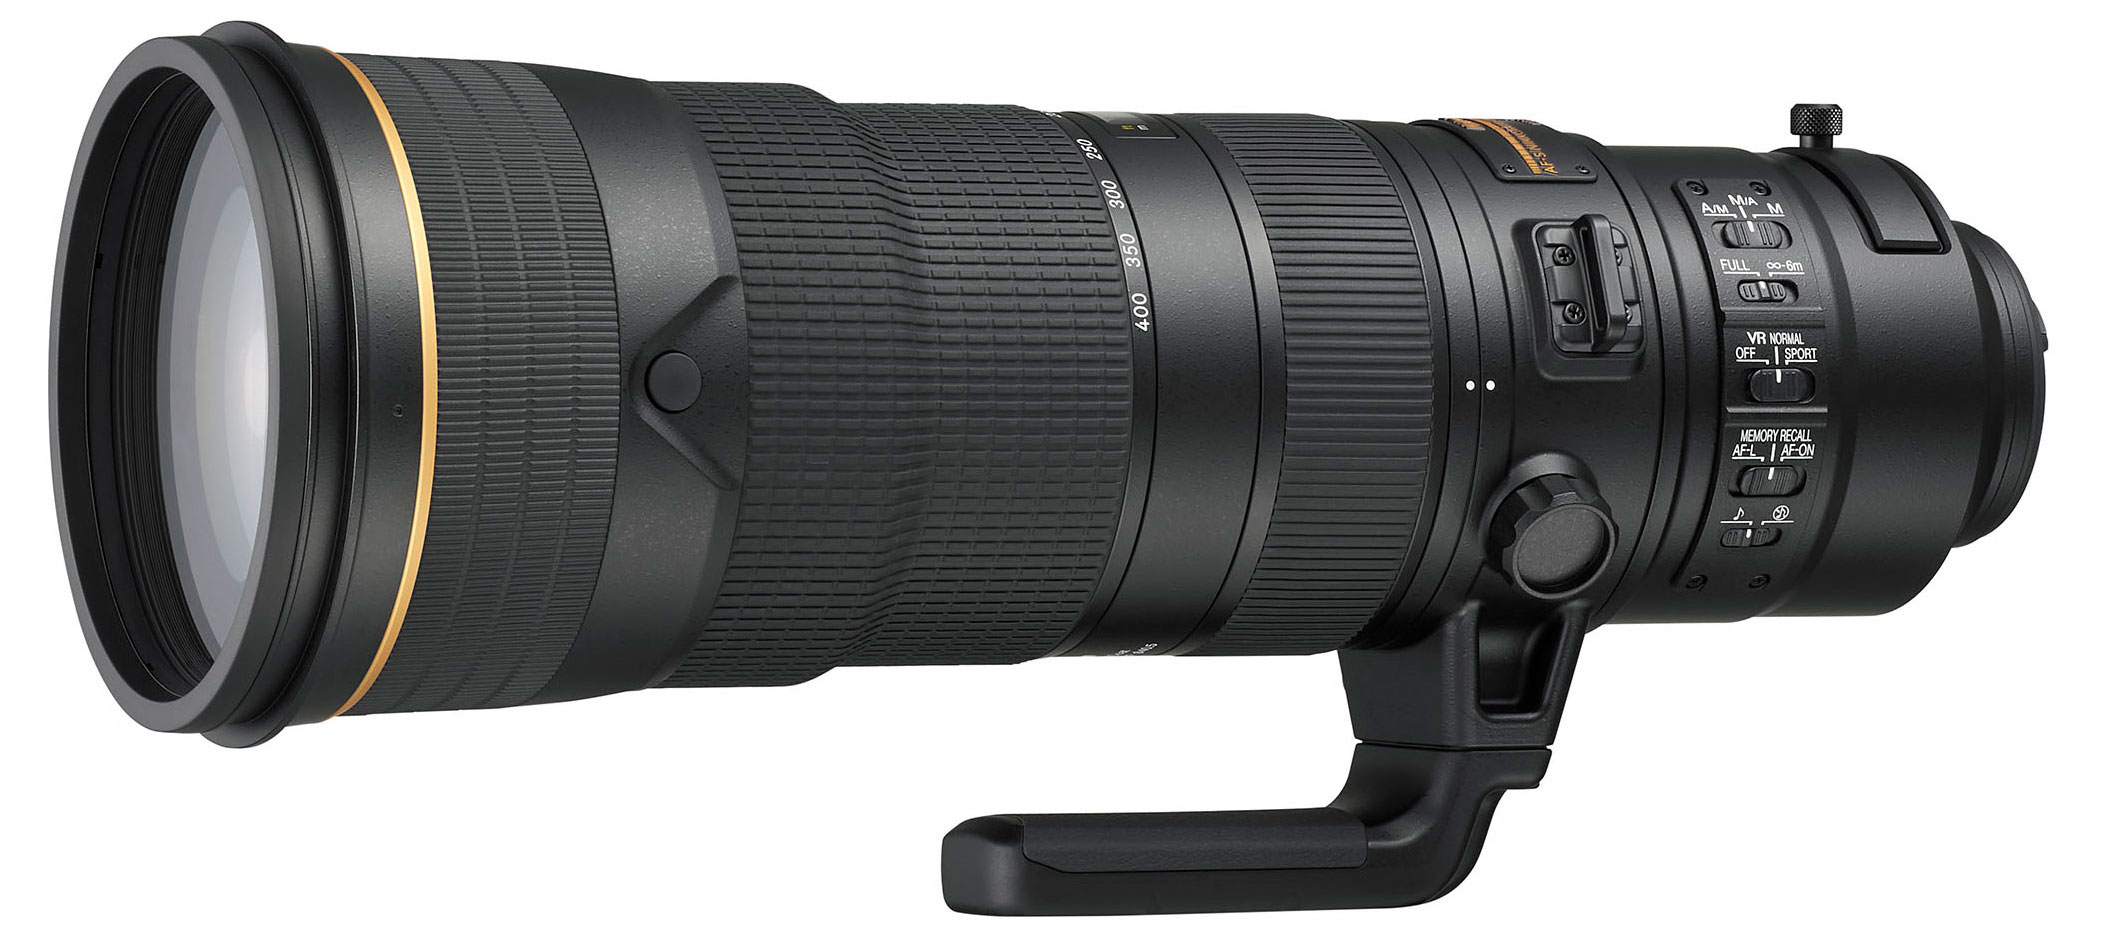 Đang tải Nikkor 180-400mm F4E- Camera.tinhte.vn 4.jpg…